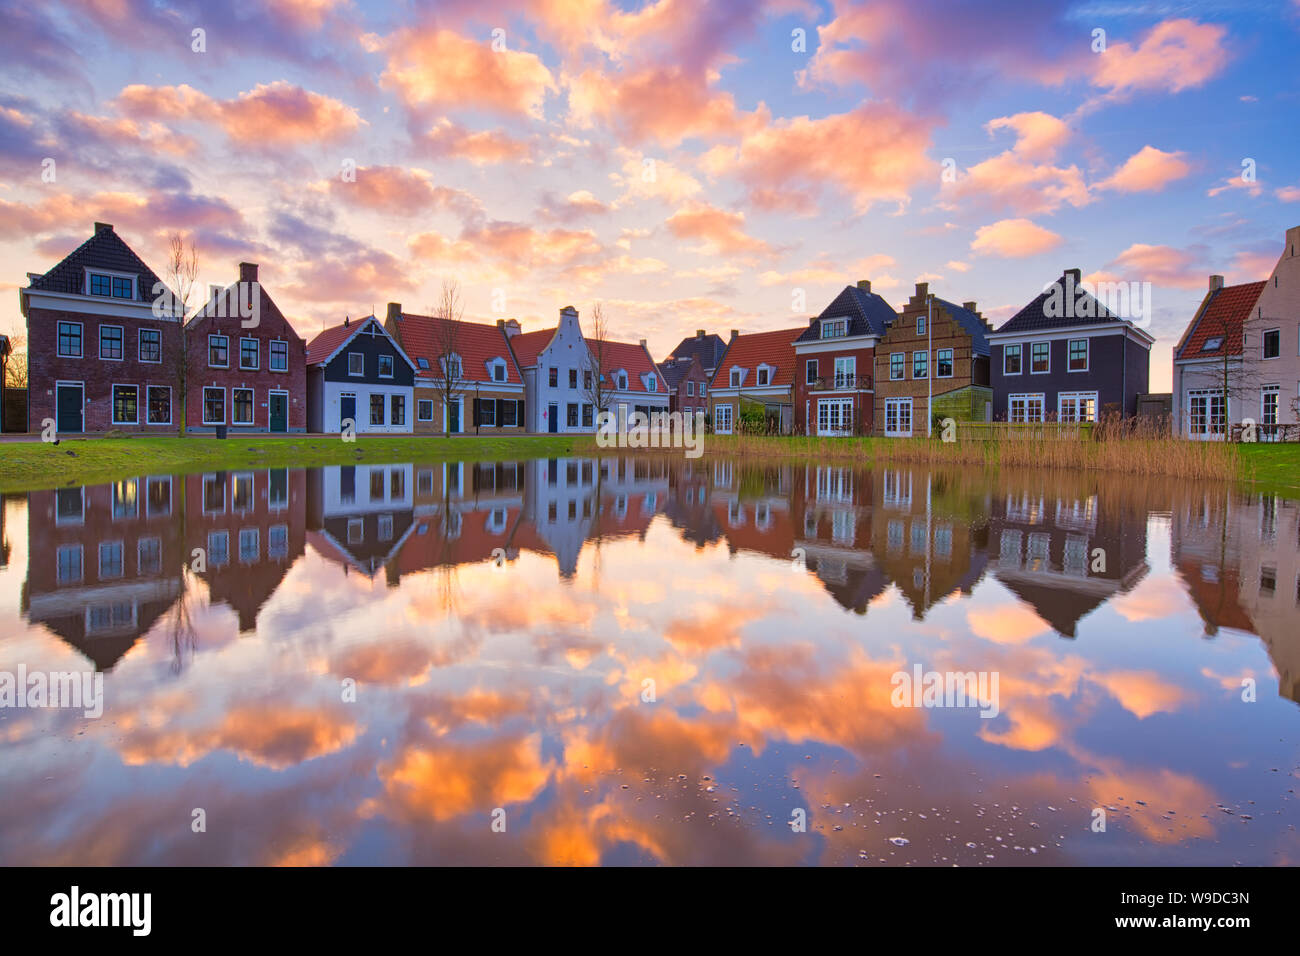 Traditionelle niederländische Häuser mit einem Kanal und einem schönen Sonnenuntergang mit Reflexionen im Wasser - Bild - die Niederlande - Reisen Bild Stockfoto